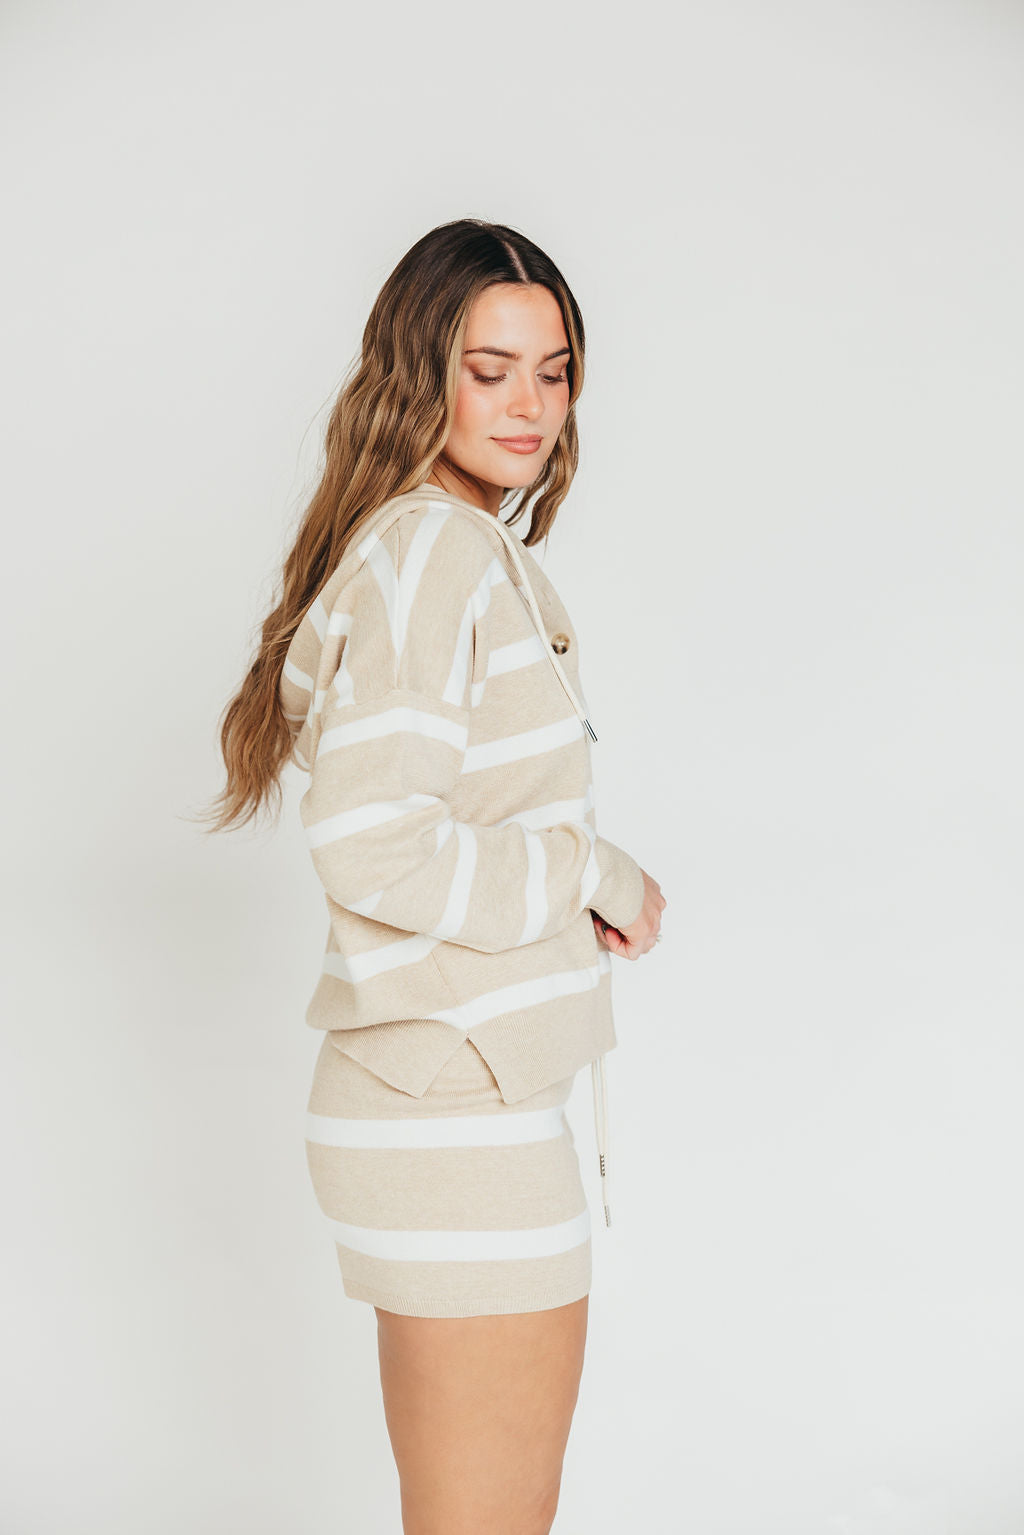 Brighton Pullover Top in White and Khaki Stripe